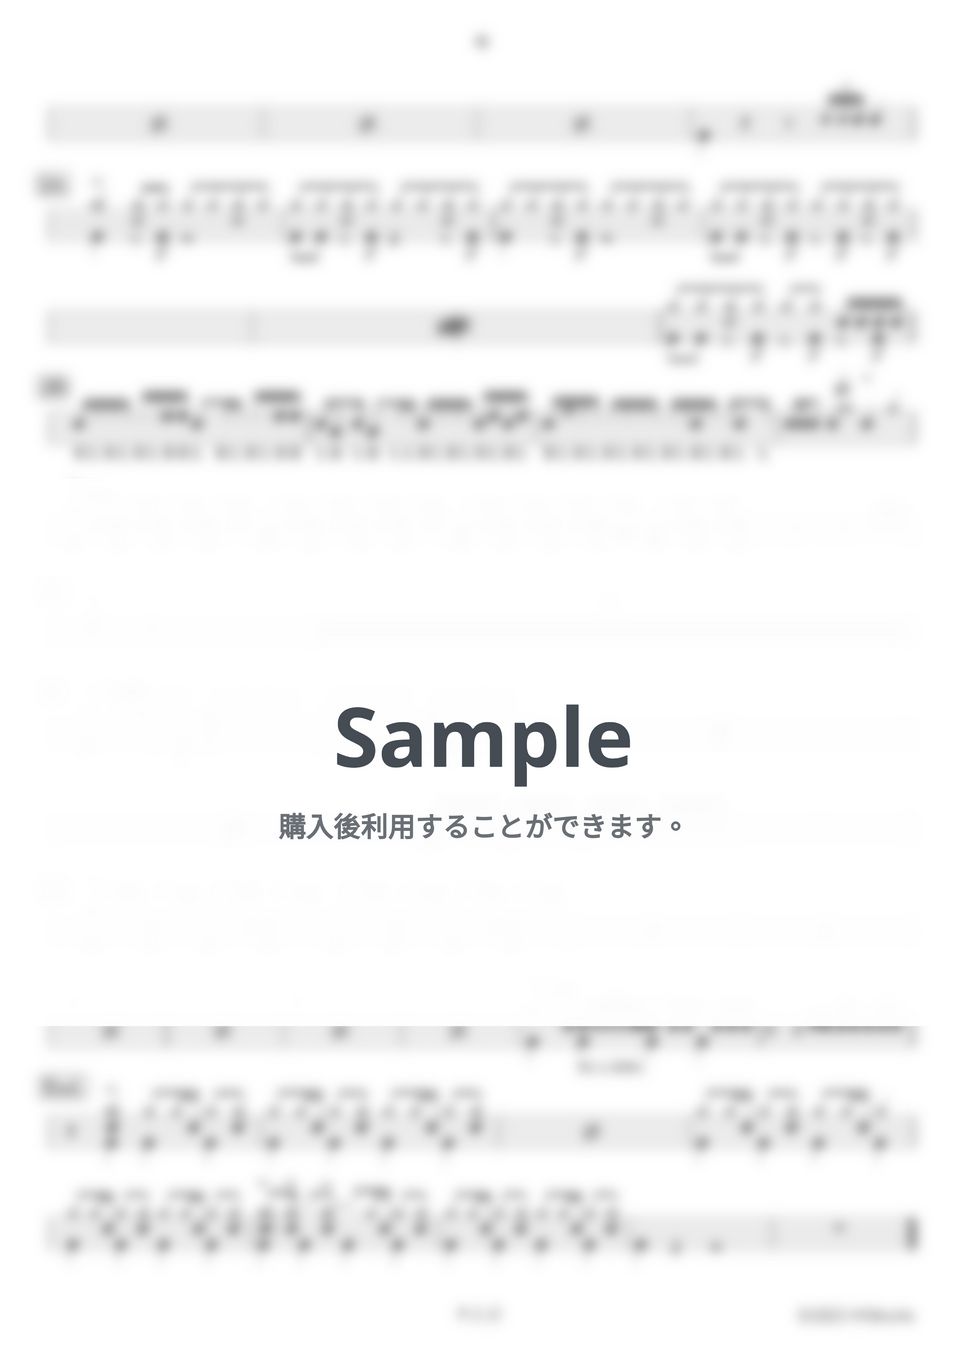 Ado - 唱【ドラム楽譜】 by HYdrums